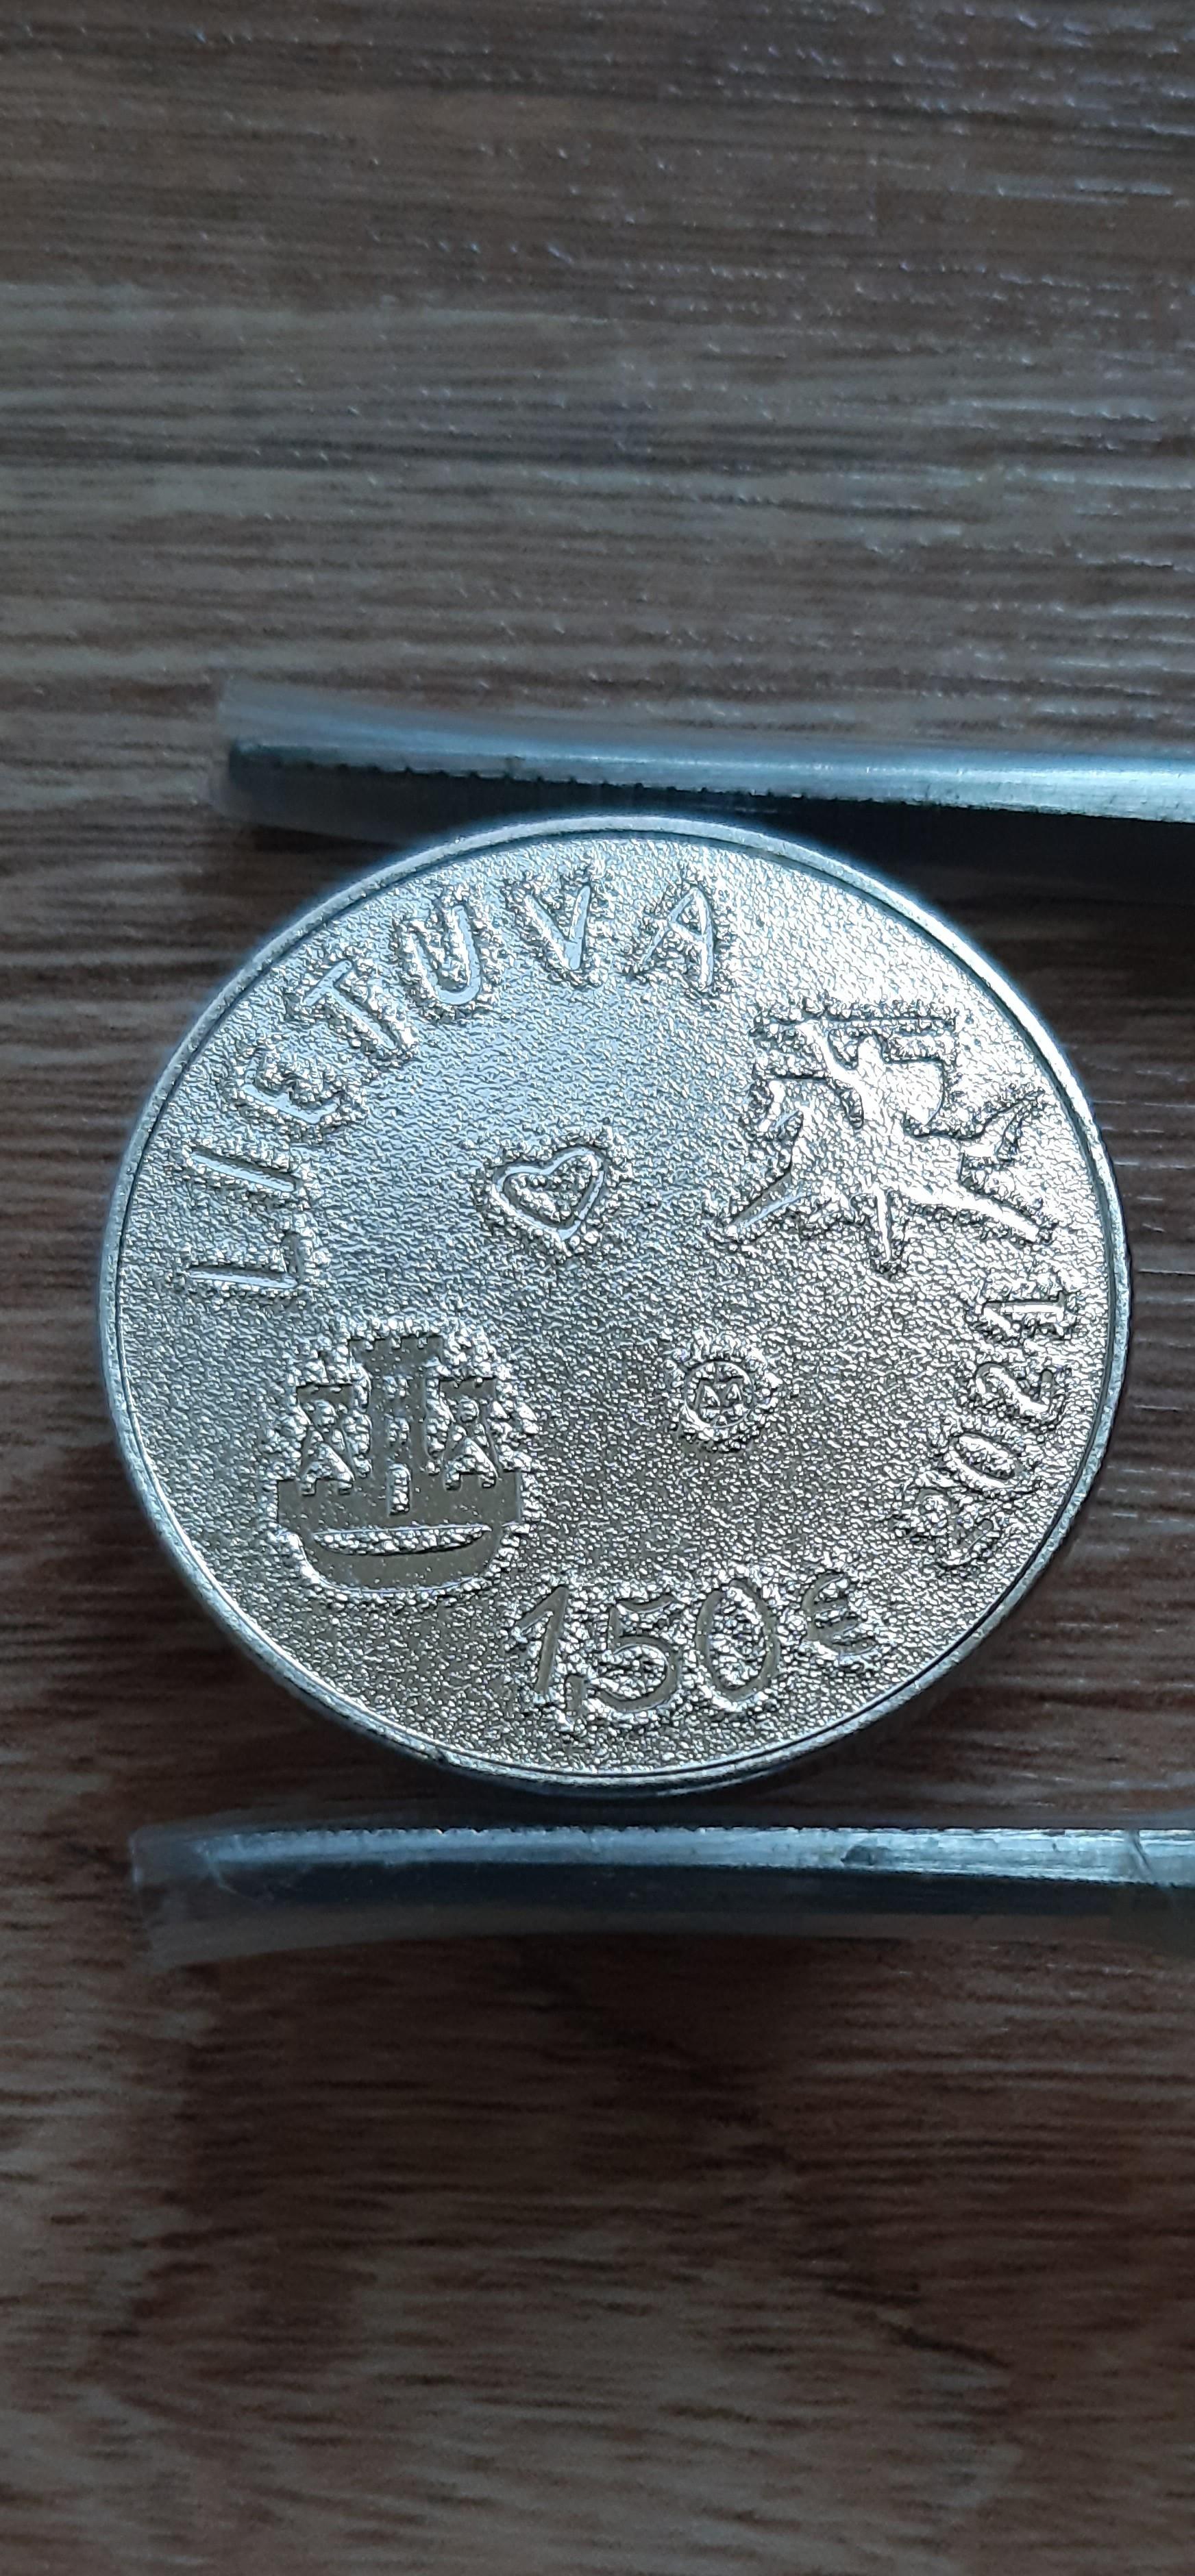 Lietuva 1.5e, kolekcinė moneta skirta jūros šventei